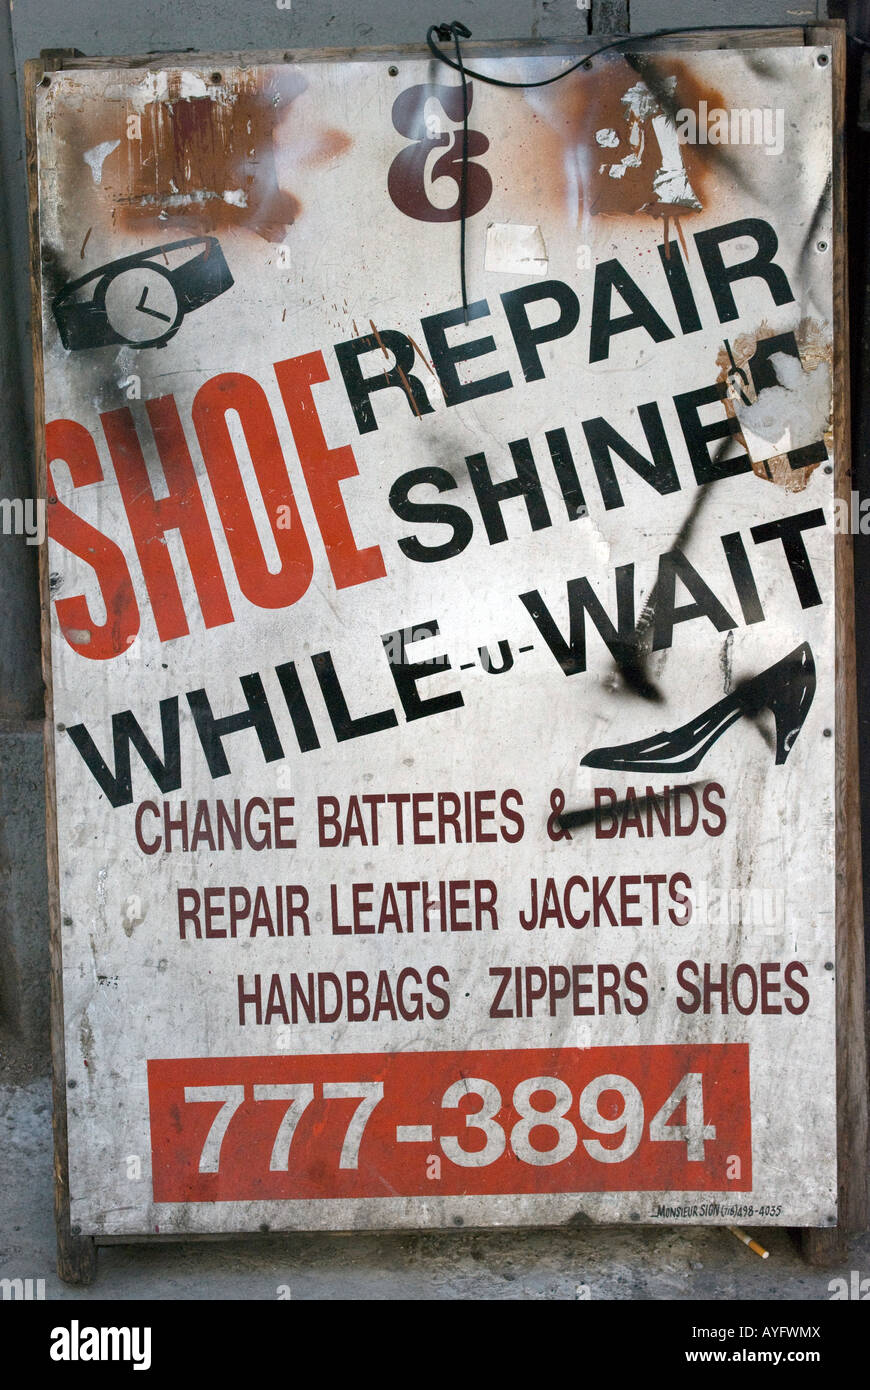 shoe repair tooting